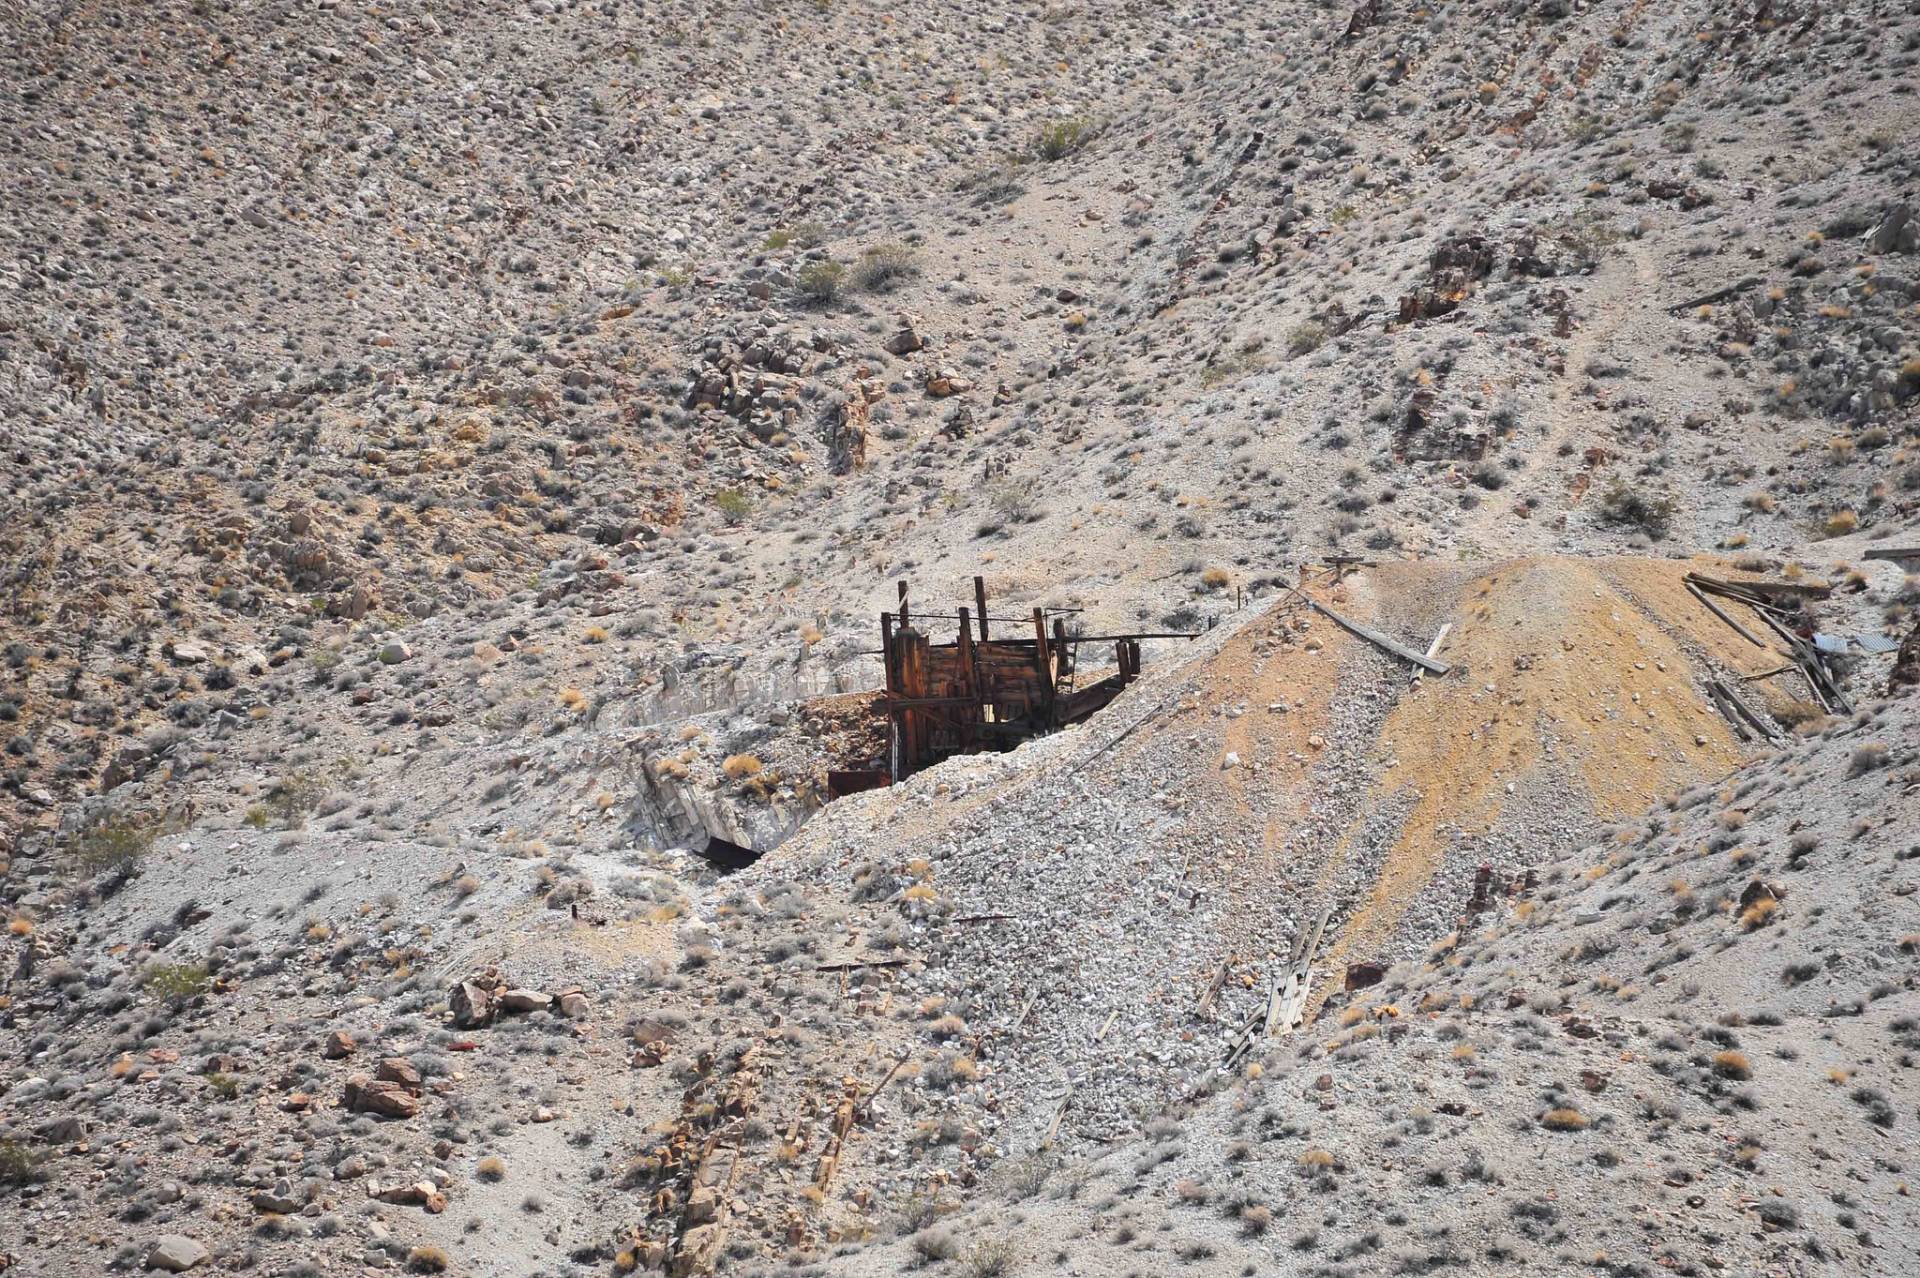 Lippincott Mine, Death Valley National Park, California